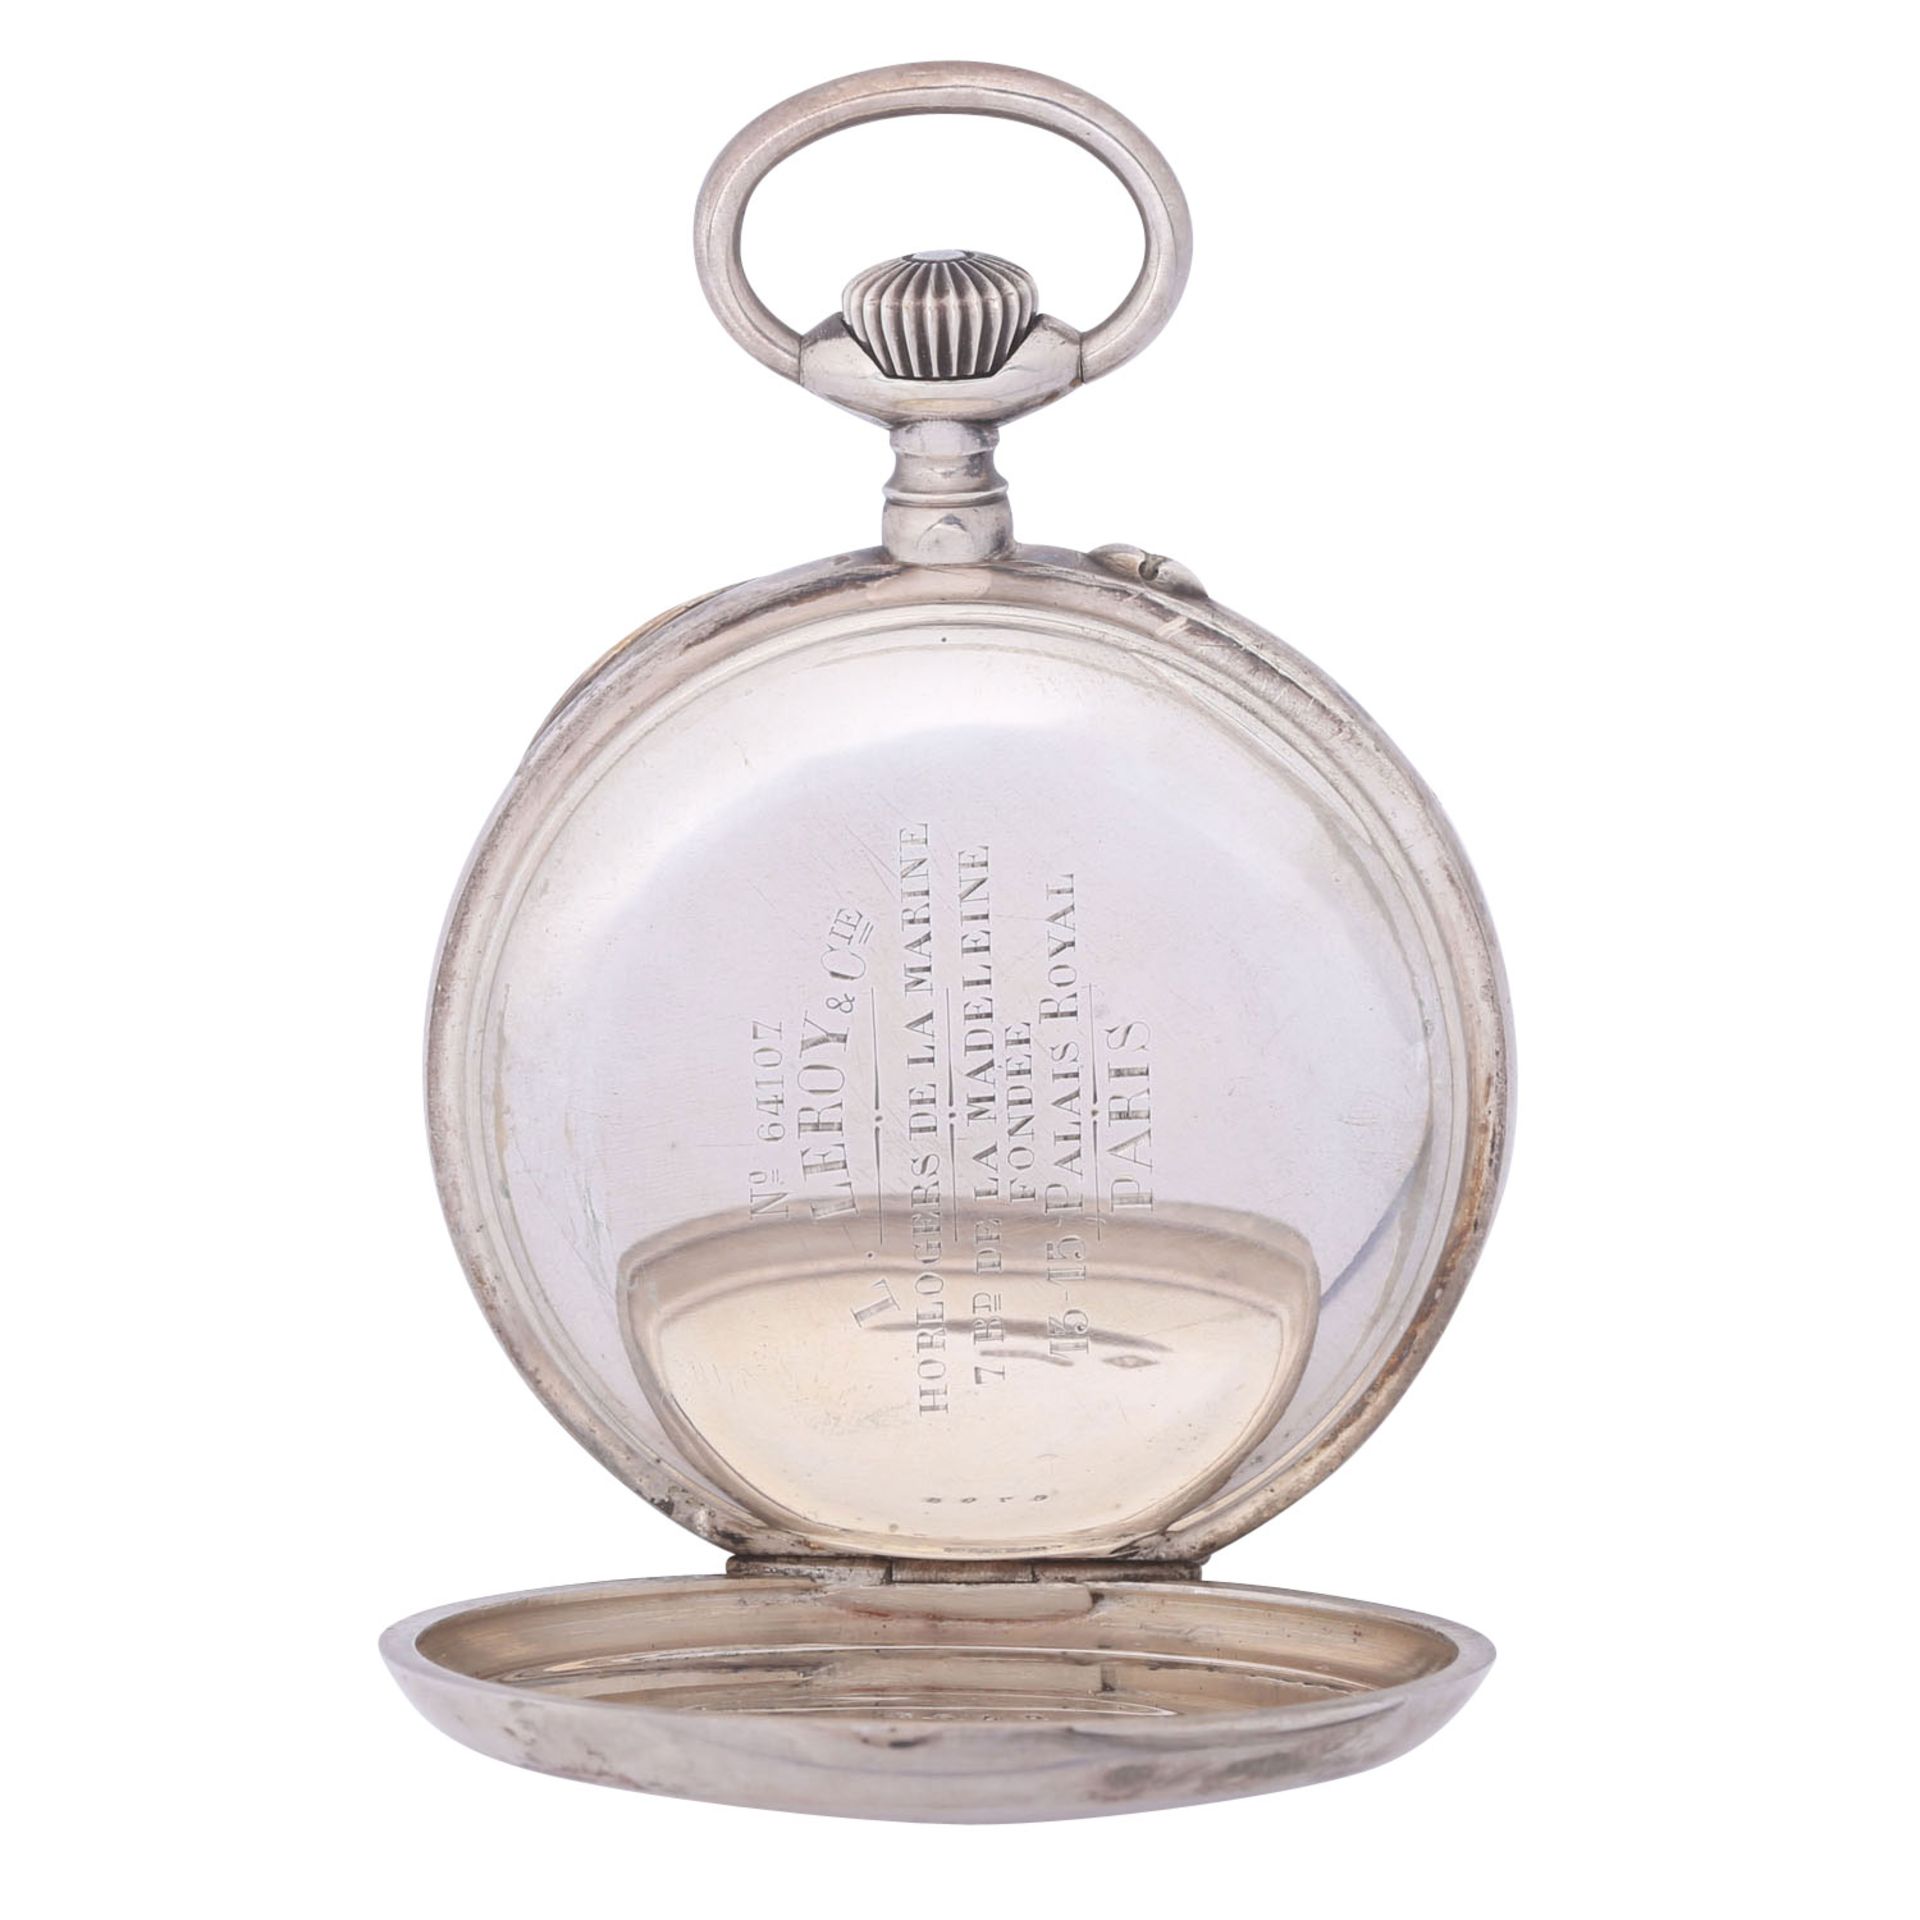 L. LEROY & Cie. Paris sehr seltener, großer und schwerer Taschenuhr Chronometer. Frankreich. - Bild 3 aus 12